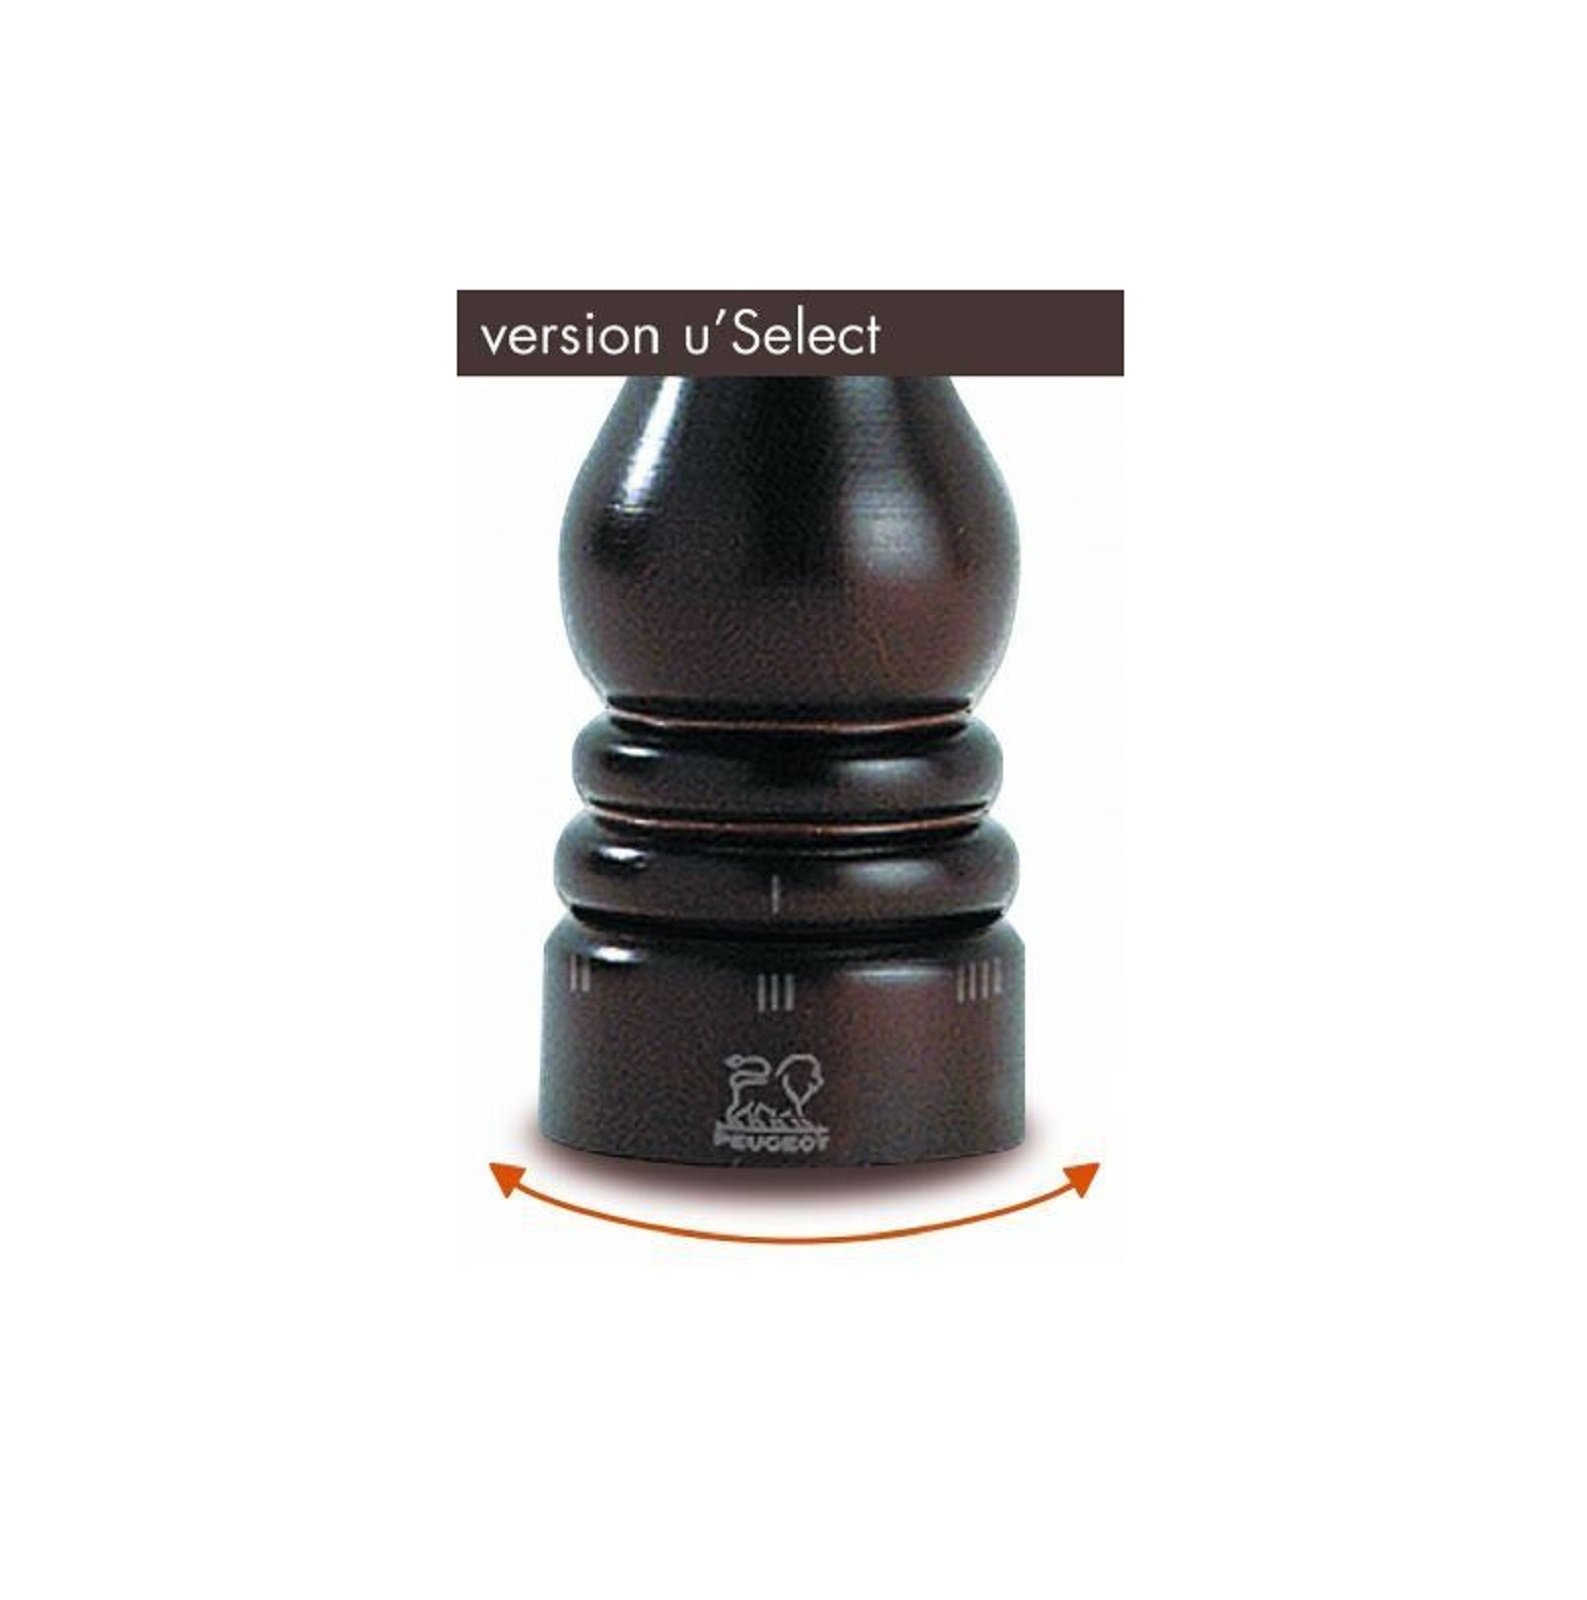 Мельница для перца Peugeot Paris U'Select, 22 см, коричневая (23485) - фото 2